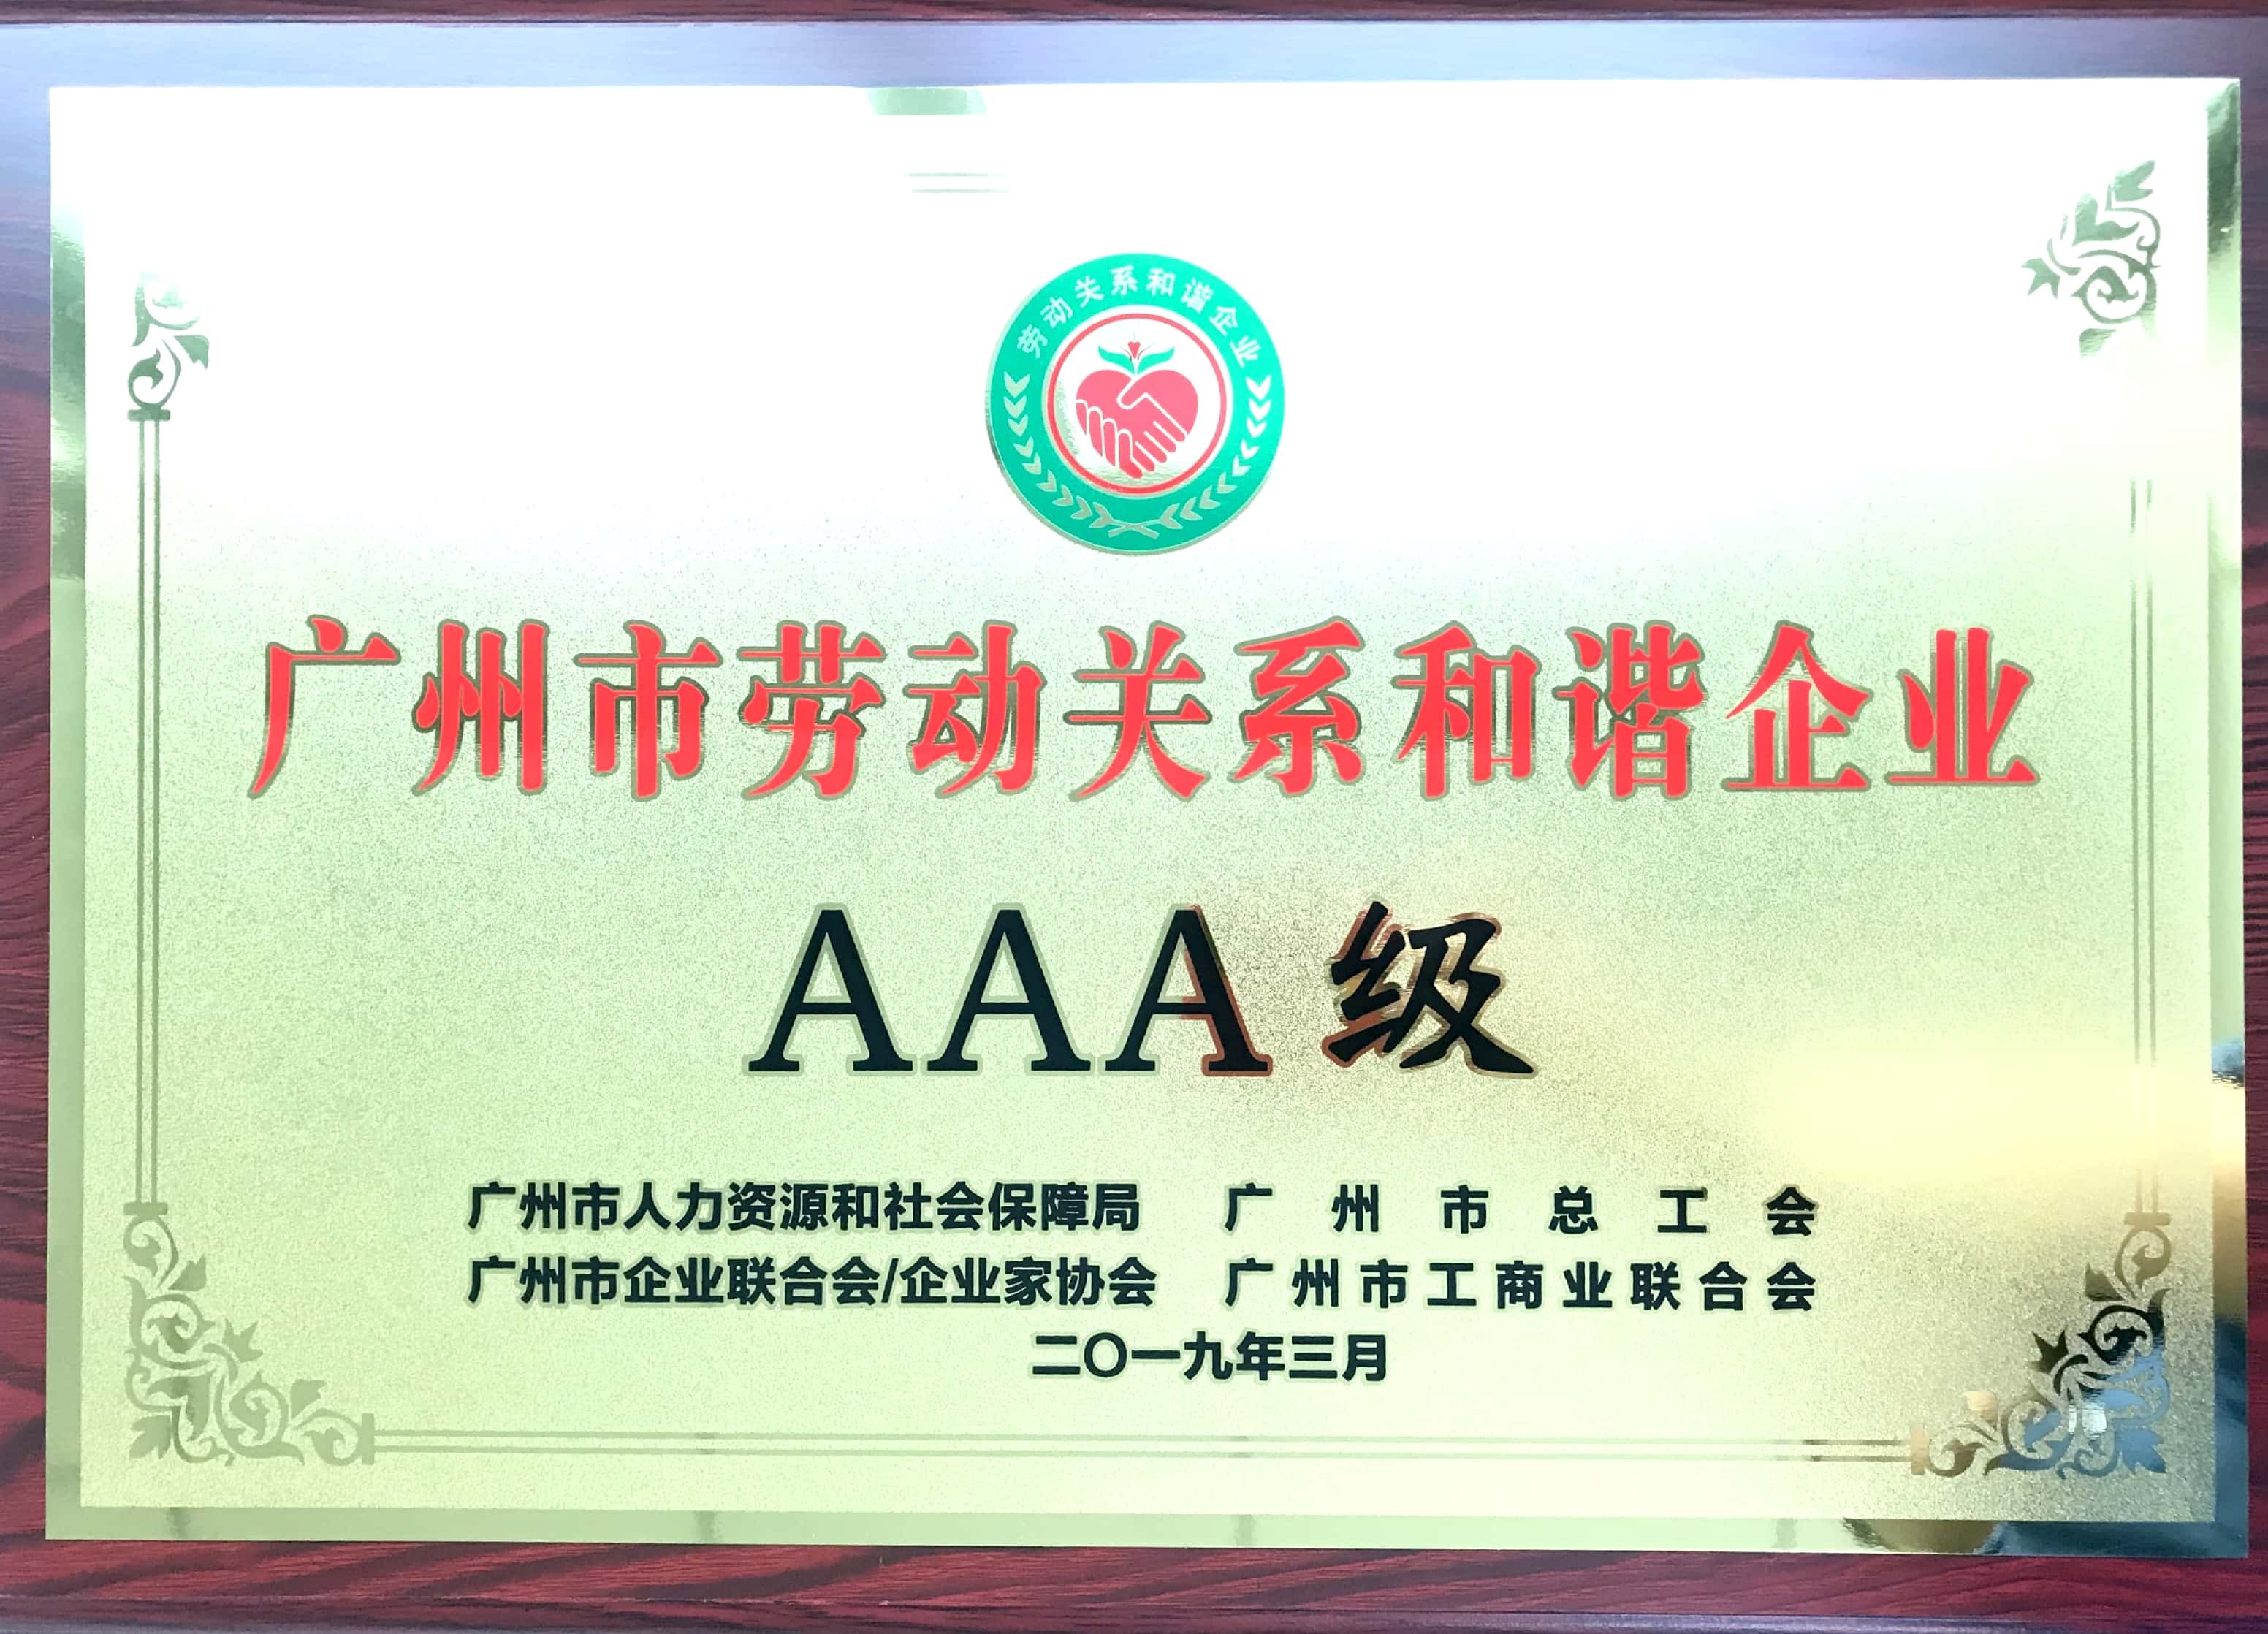 荣耀时刻 | 广日电气荣获“AAA级劳动关系和谐企业”称号